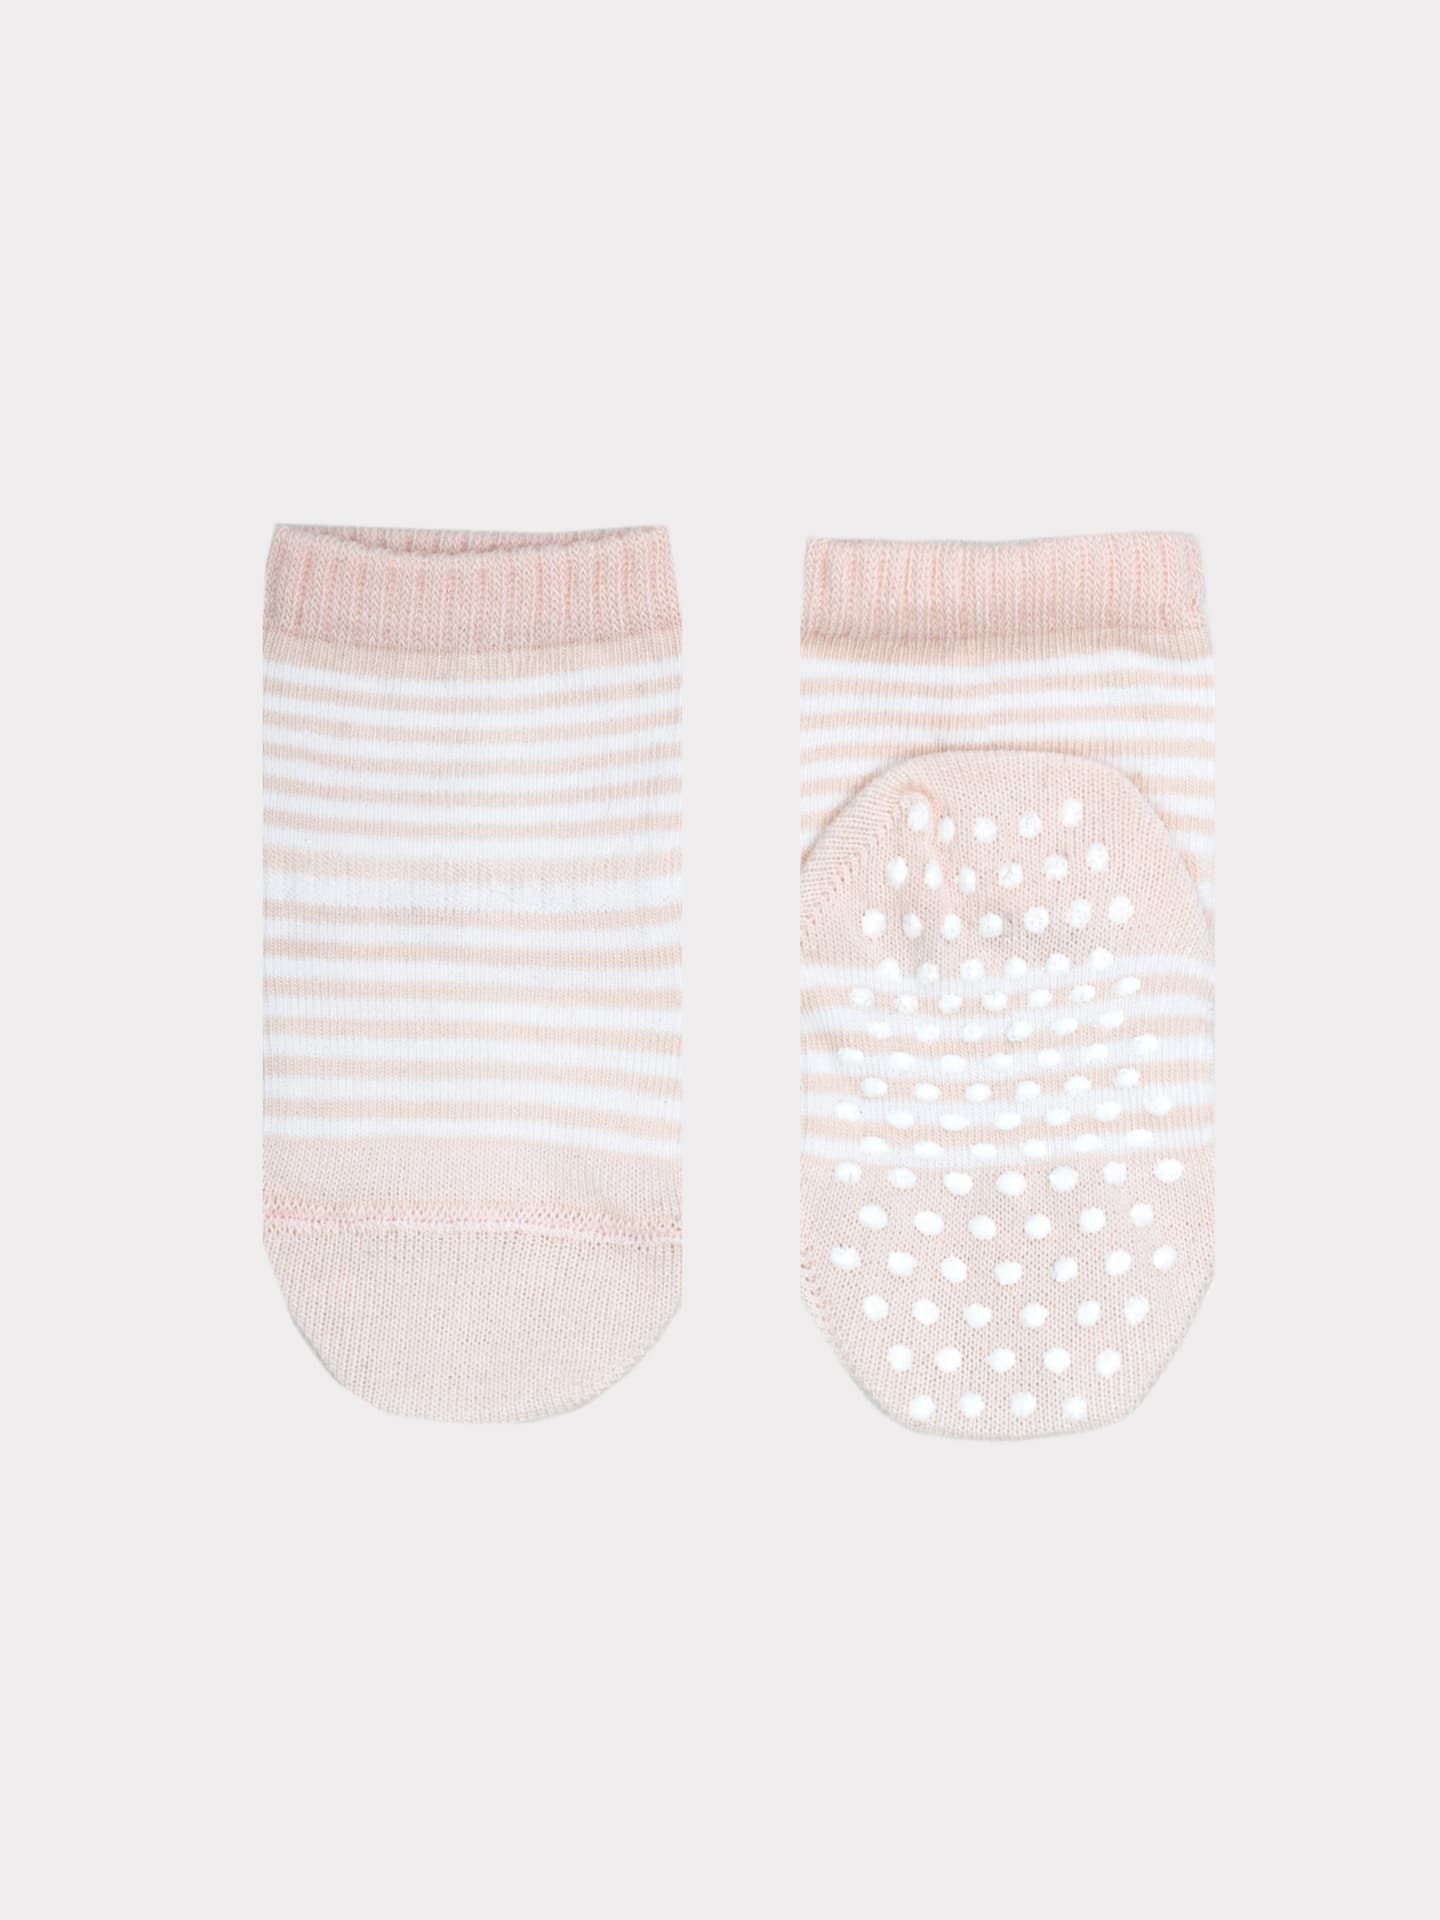 Детские носки зефирного цвета в полоску с силиконовым покрытием на стопе